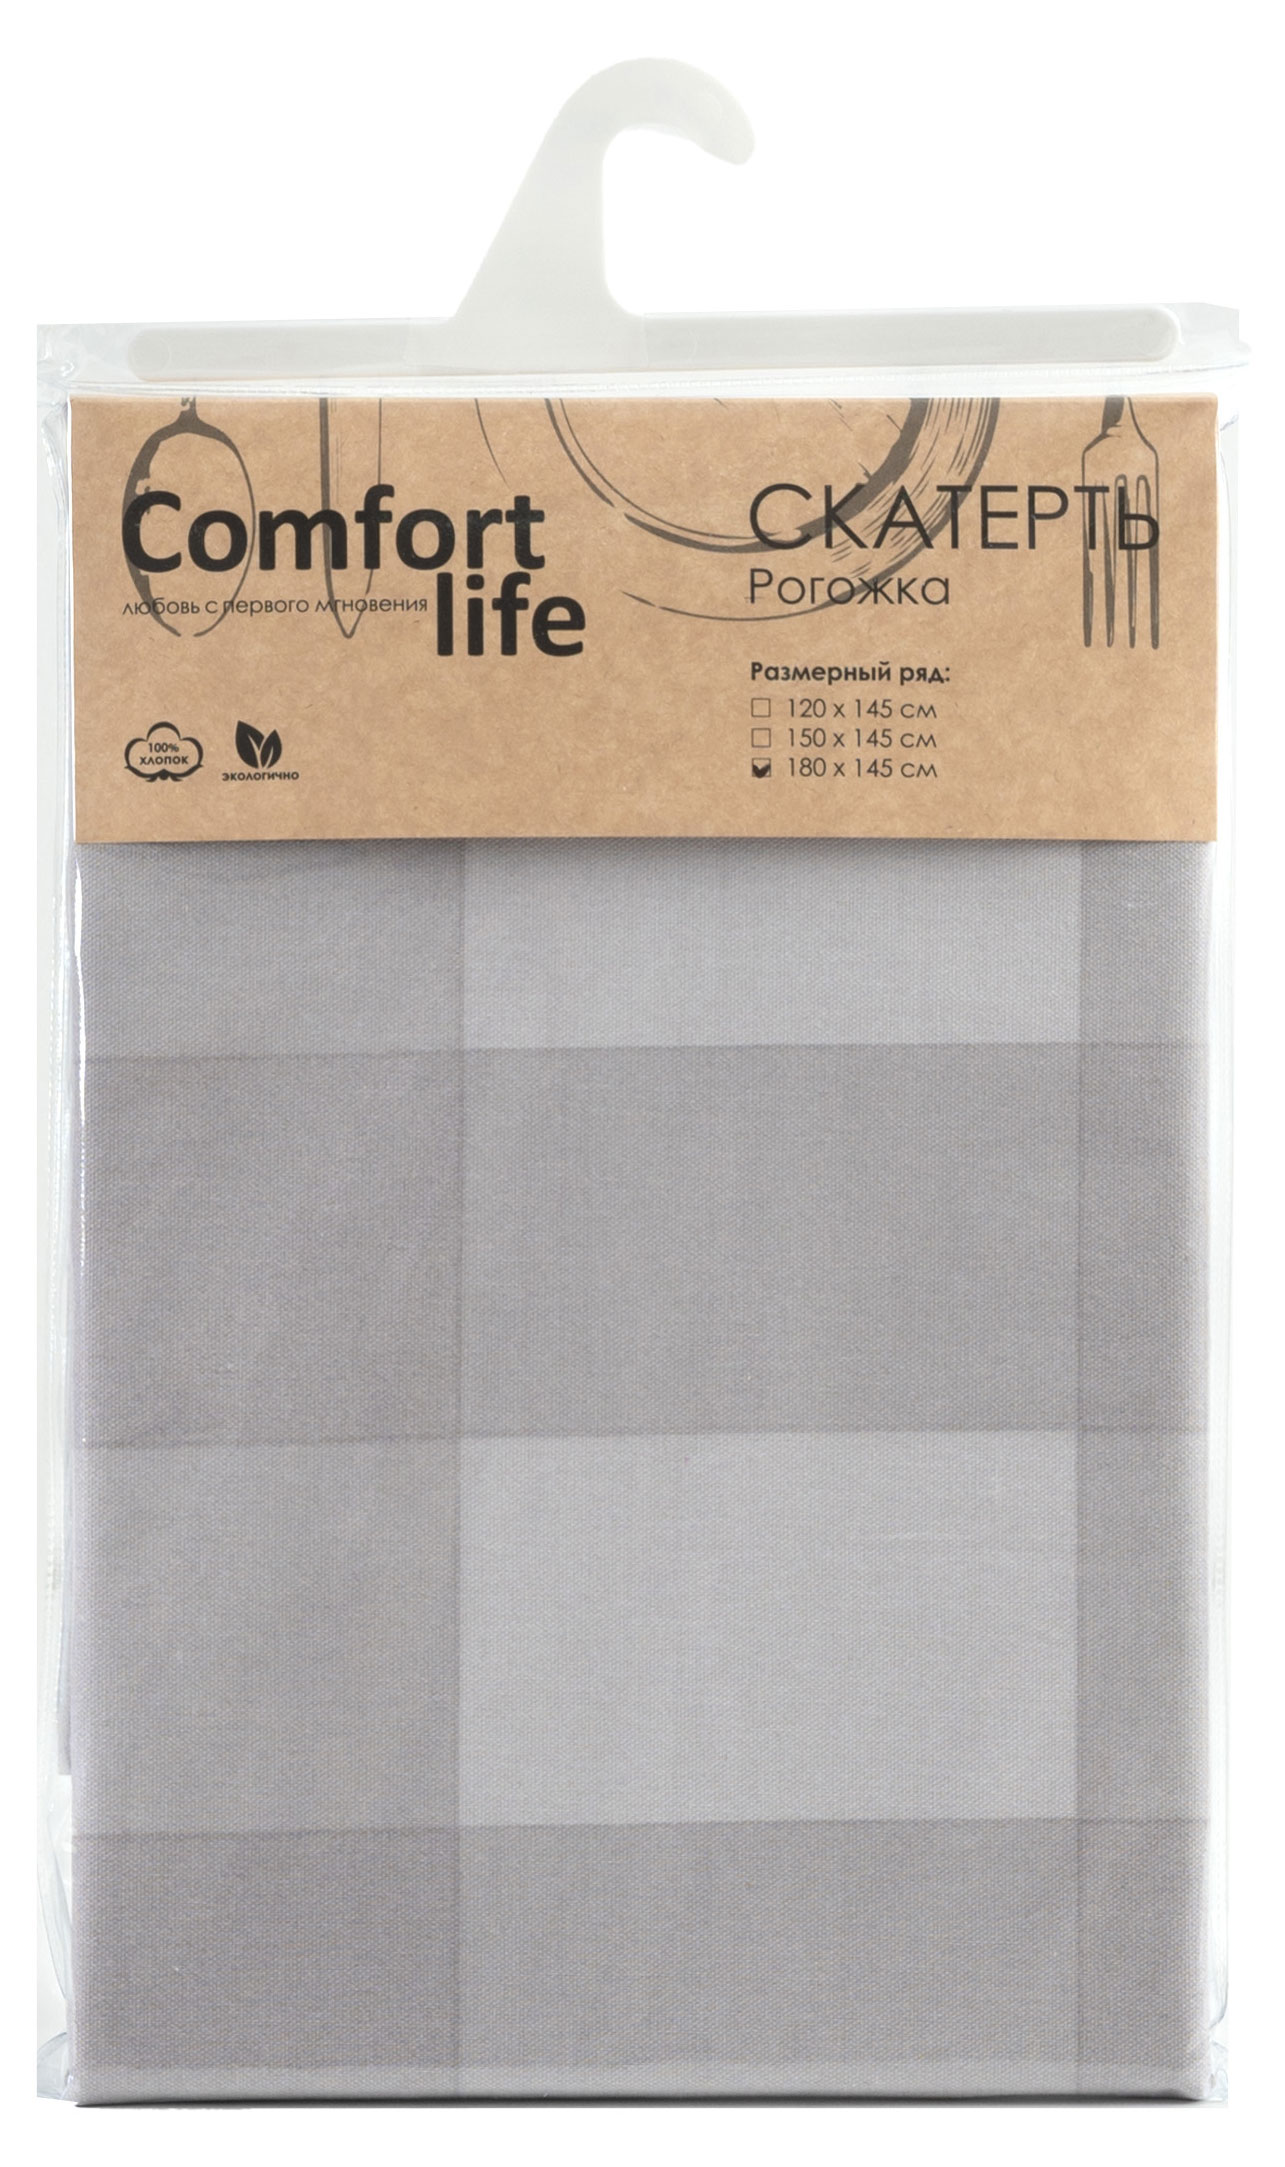 Скатерть Comfort Life рогожка, 180х145 см